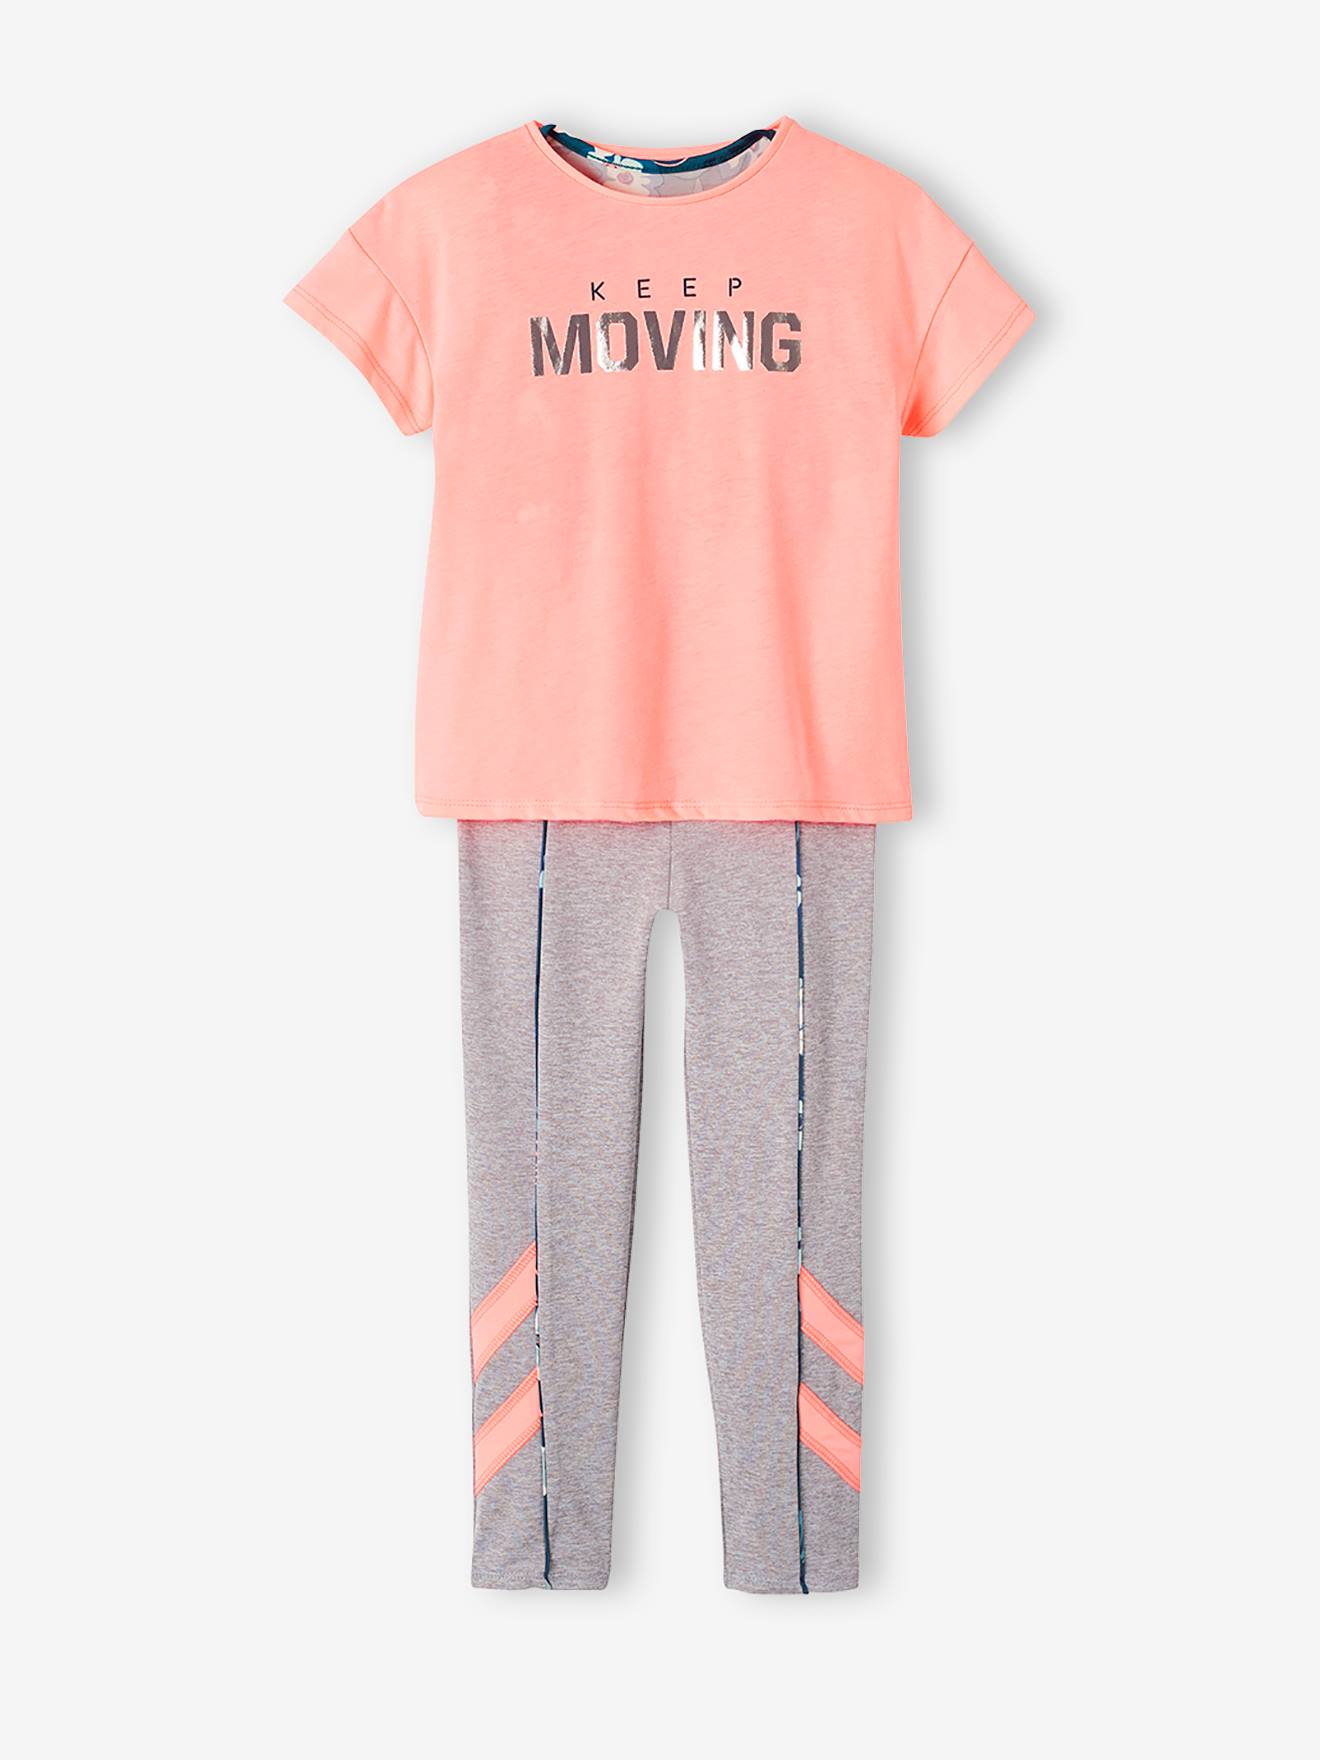 3-delige sportieve set met korte top + legging + shirt voor meisjes roze